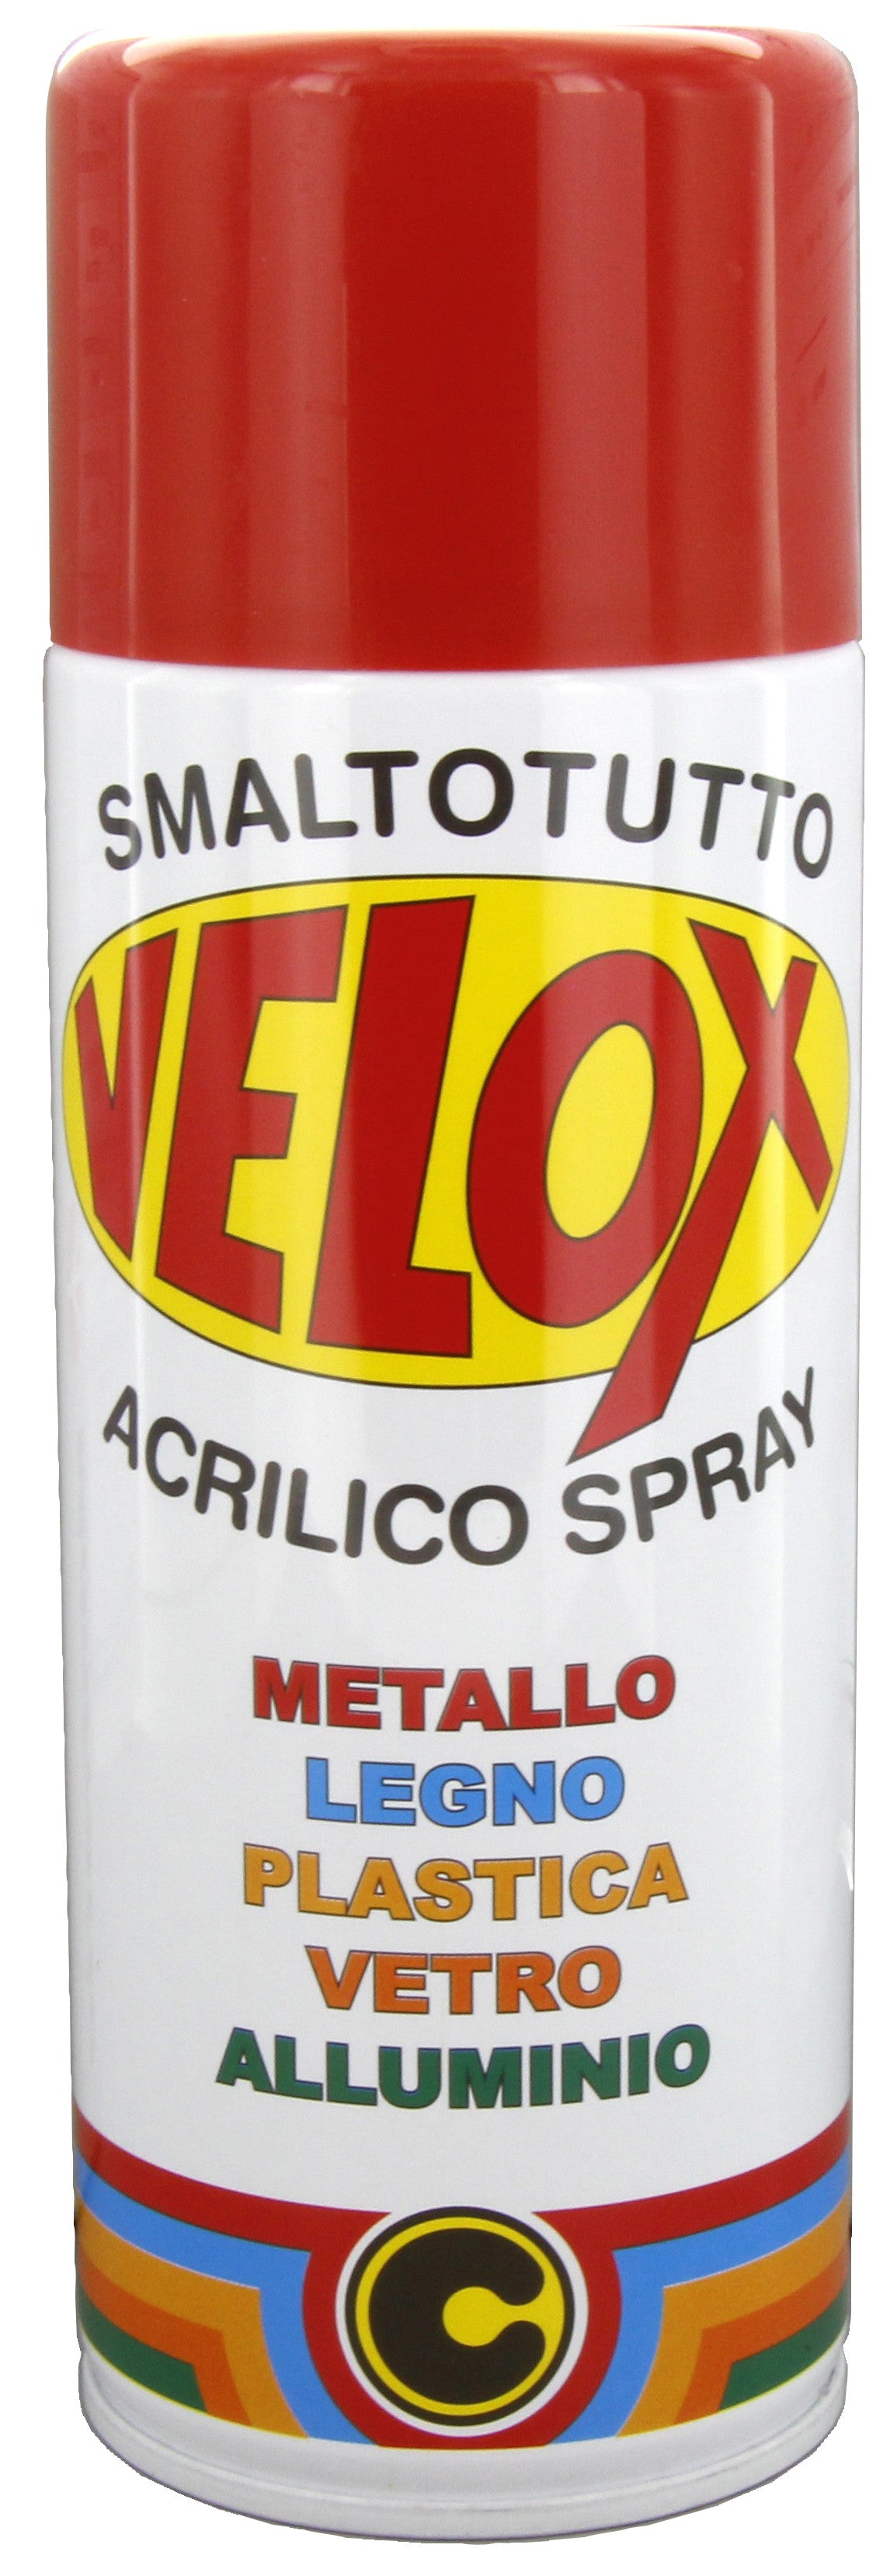 Velox spray acrilico rosso fuoco ral 3000 ITAL G.E.T.E.